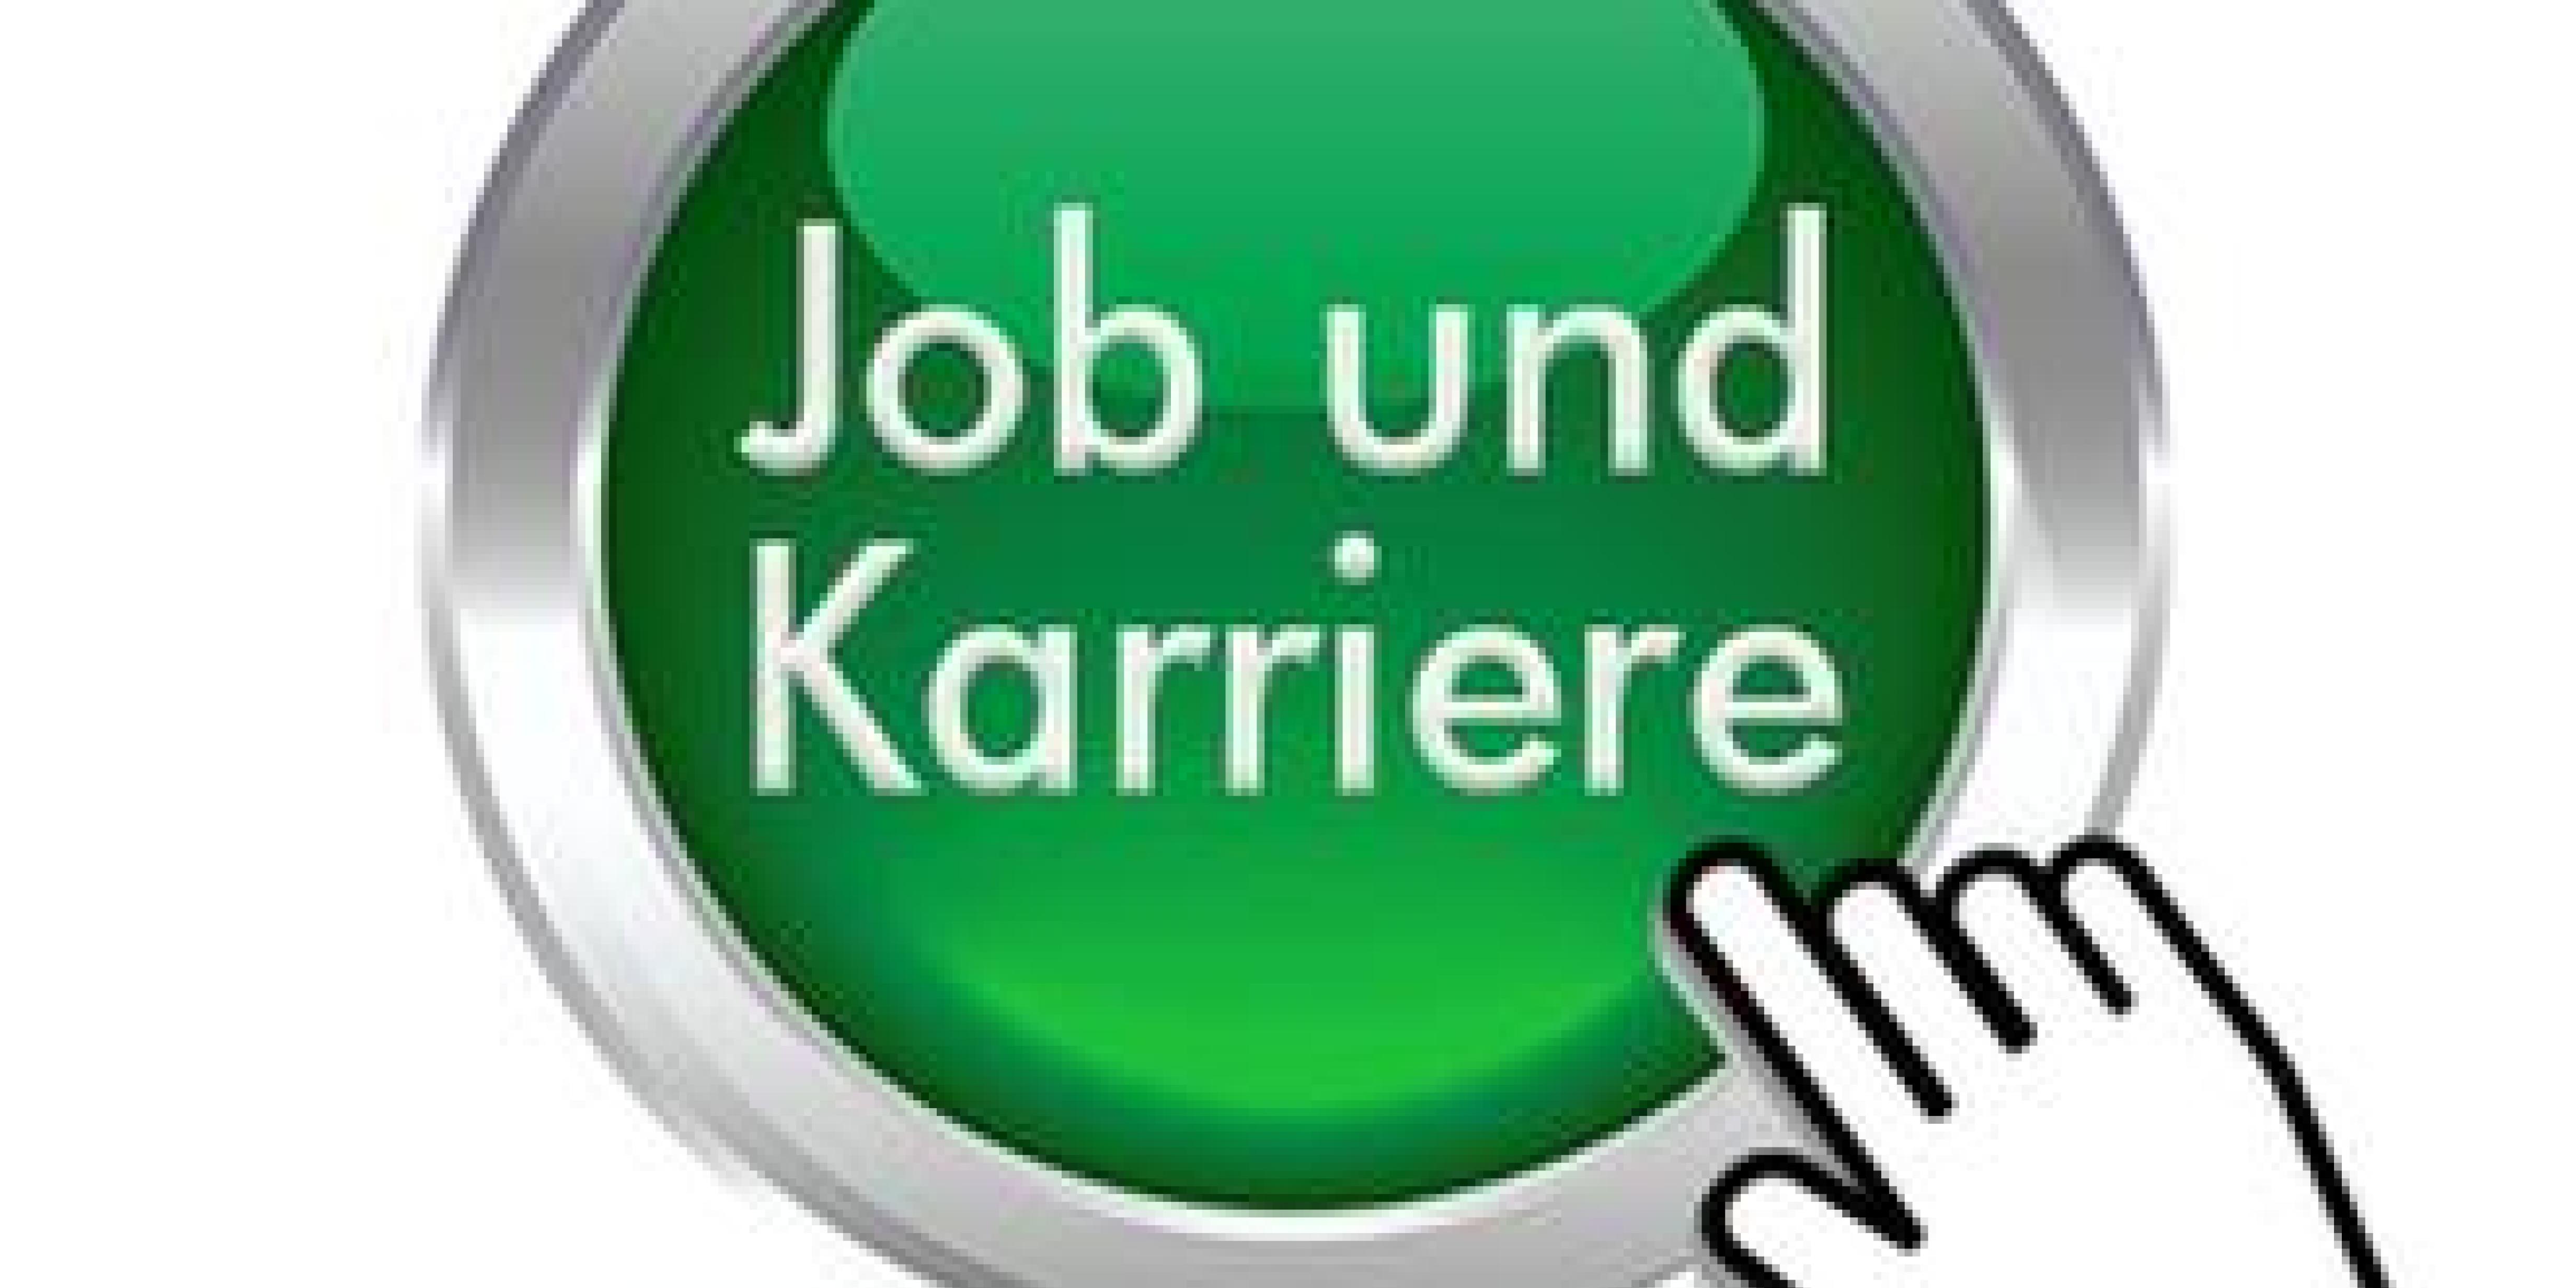 grüner Button "Job und Karriere" wird mit der Maustaste angeklickt